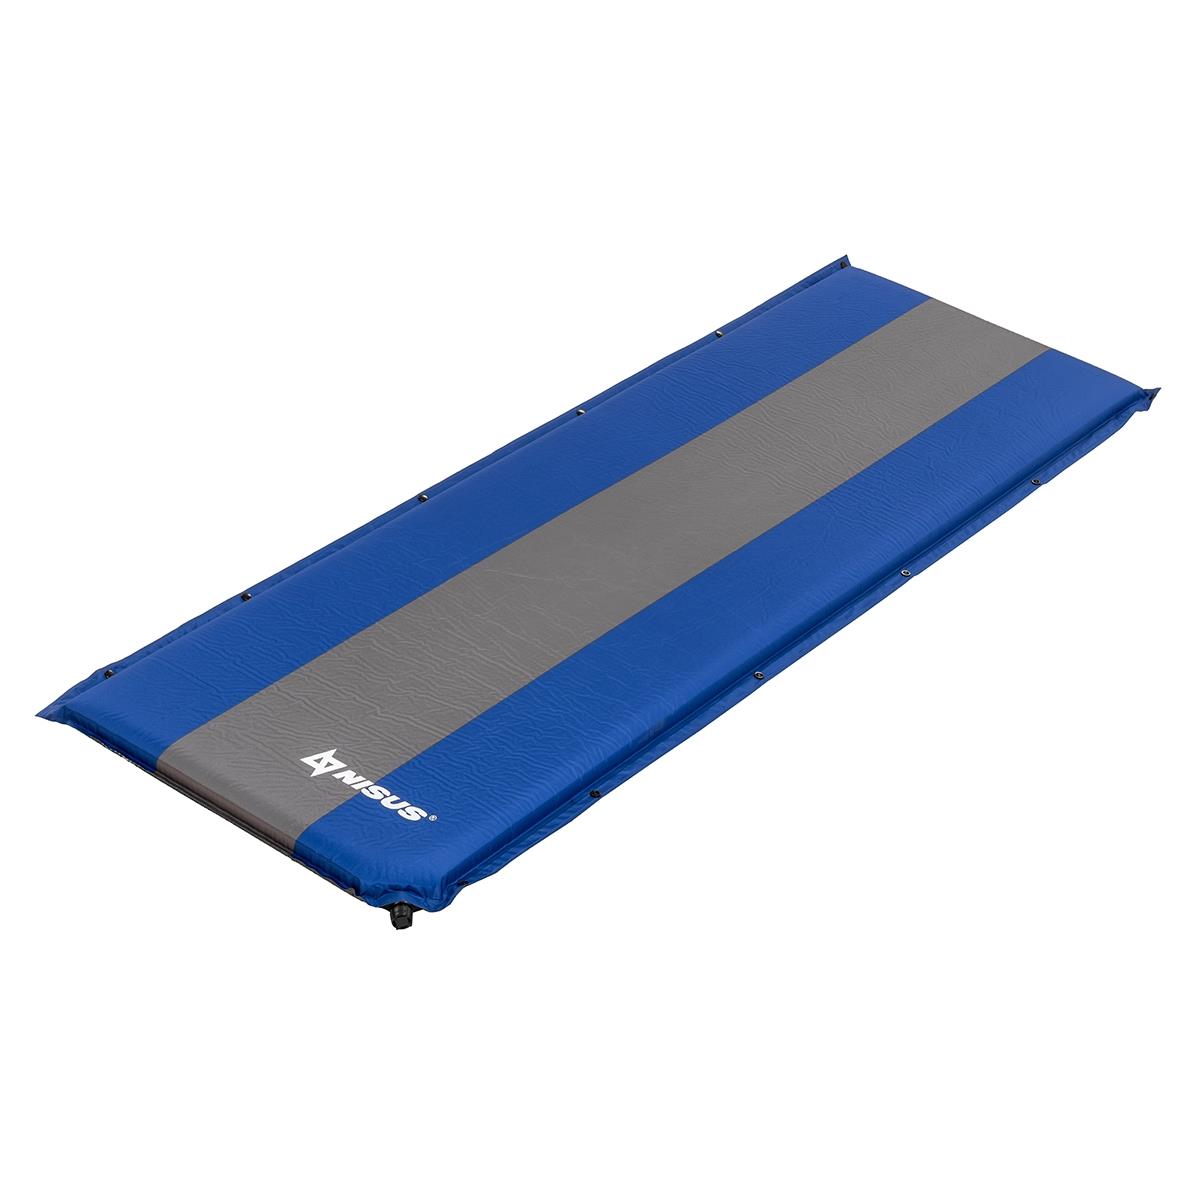 Коврик самонадув. 190x65x6 синий/серый (N-006-BG) Nisus коврик вкладыш nostik антипригарный для сковород 26х26 см